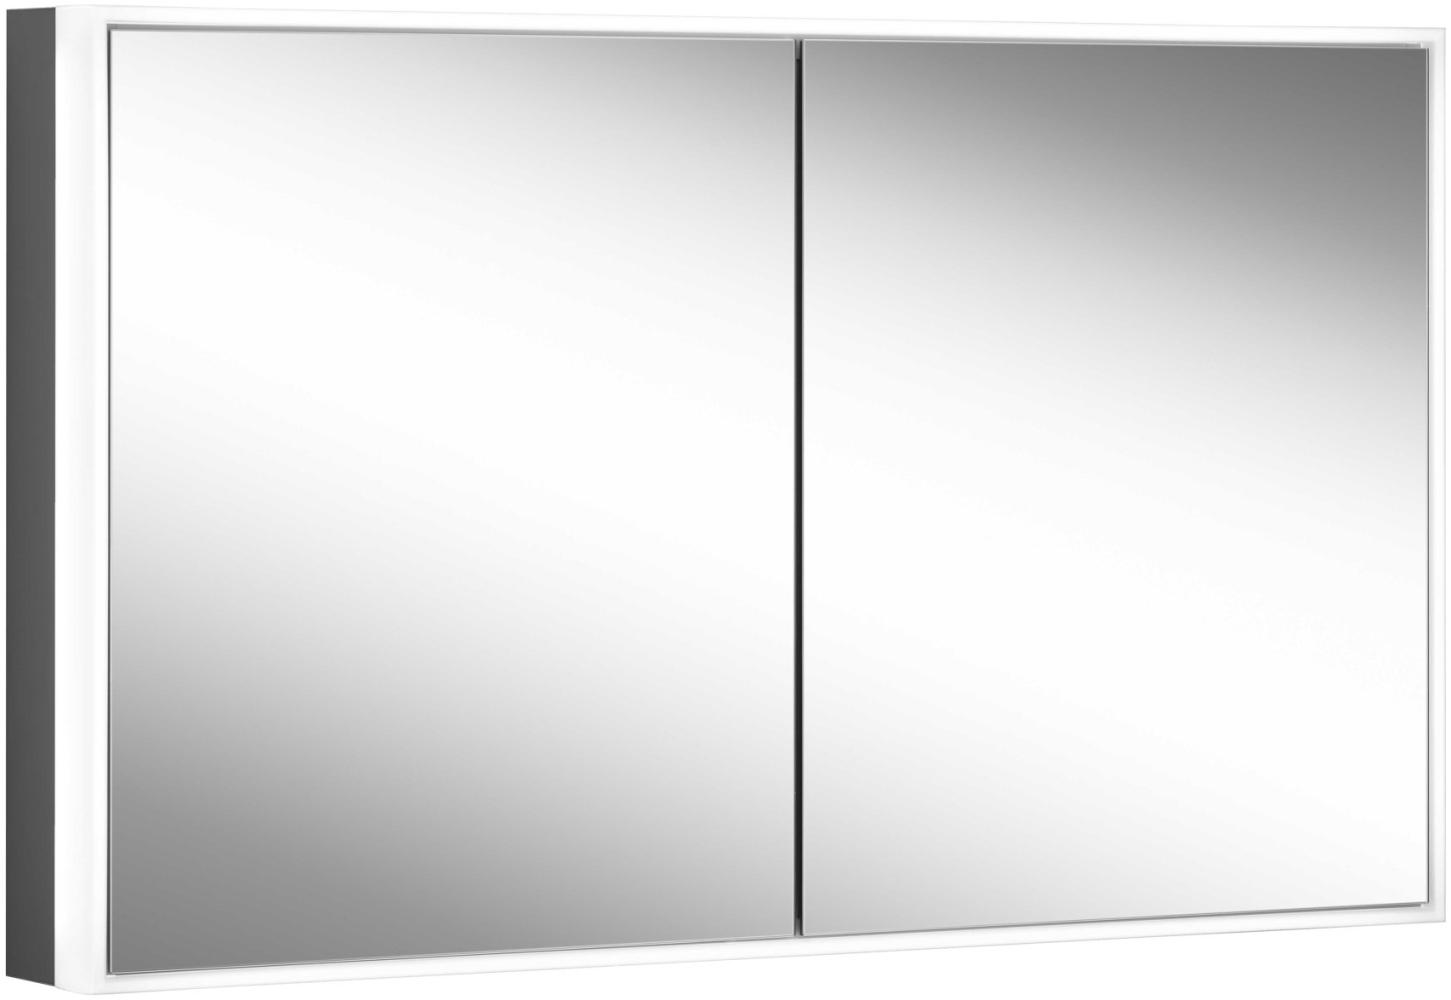 Schneider PREMIUM Line Ultimate LED Lichtspiegelschrank, 2 Doppelspiegeltüren, 1025x73,3x15,8cm, 182. 100, Ausführung: EU-Norm/Korpus schwarz matt - 182. 100. 02. 41 Bild 1